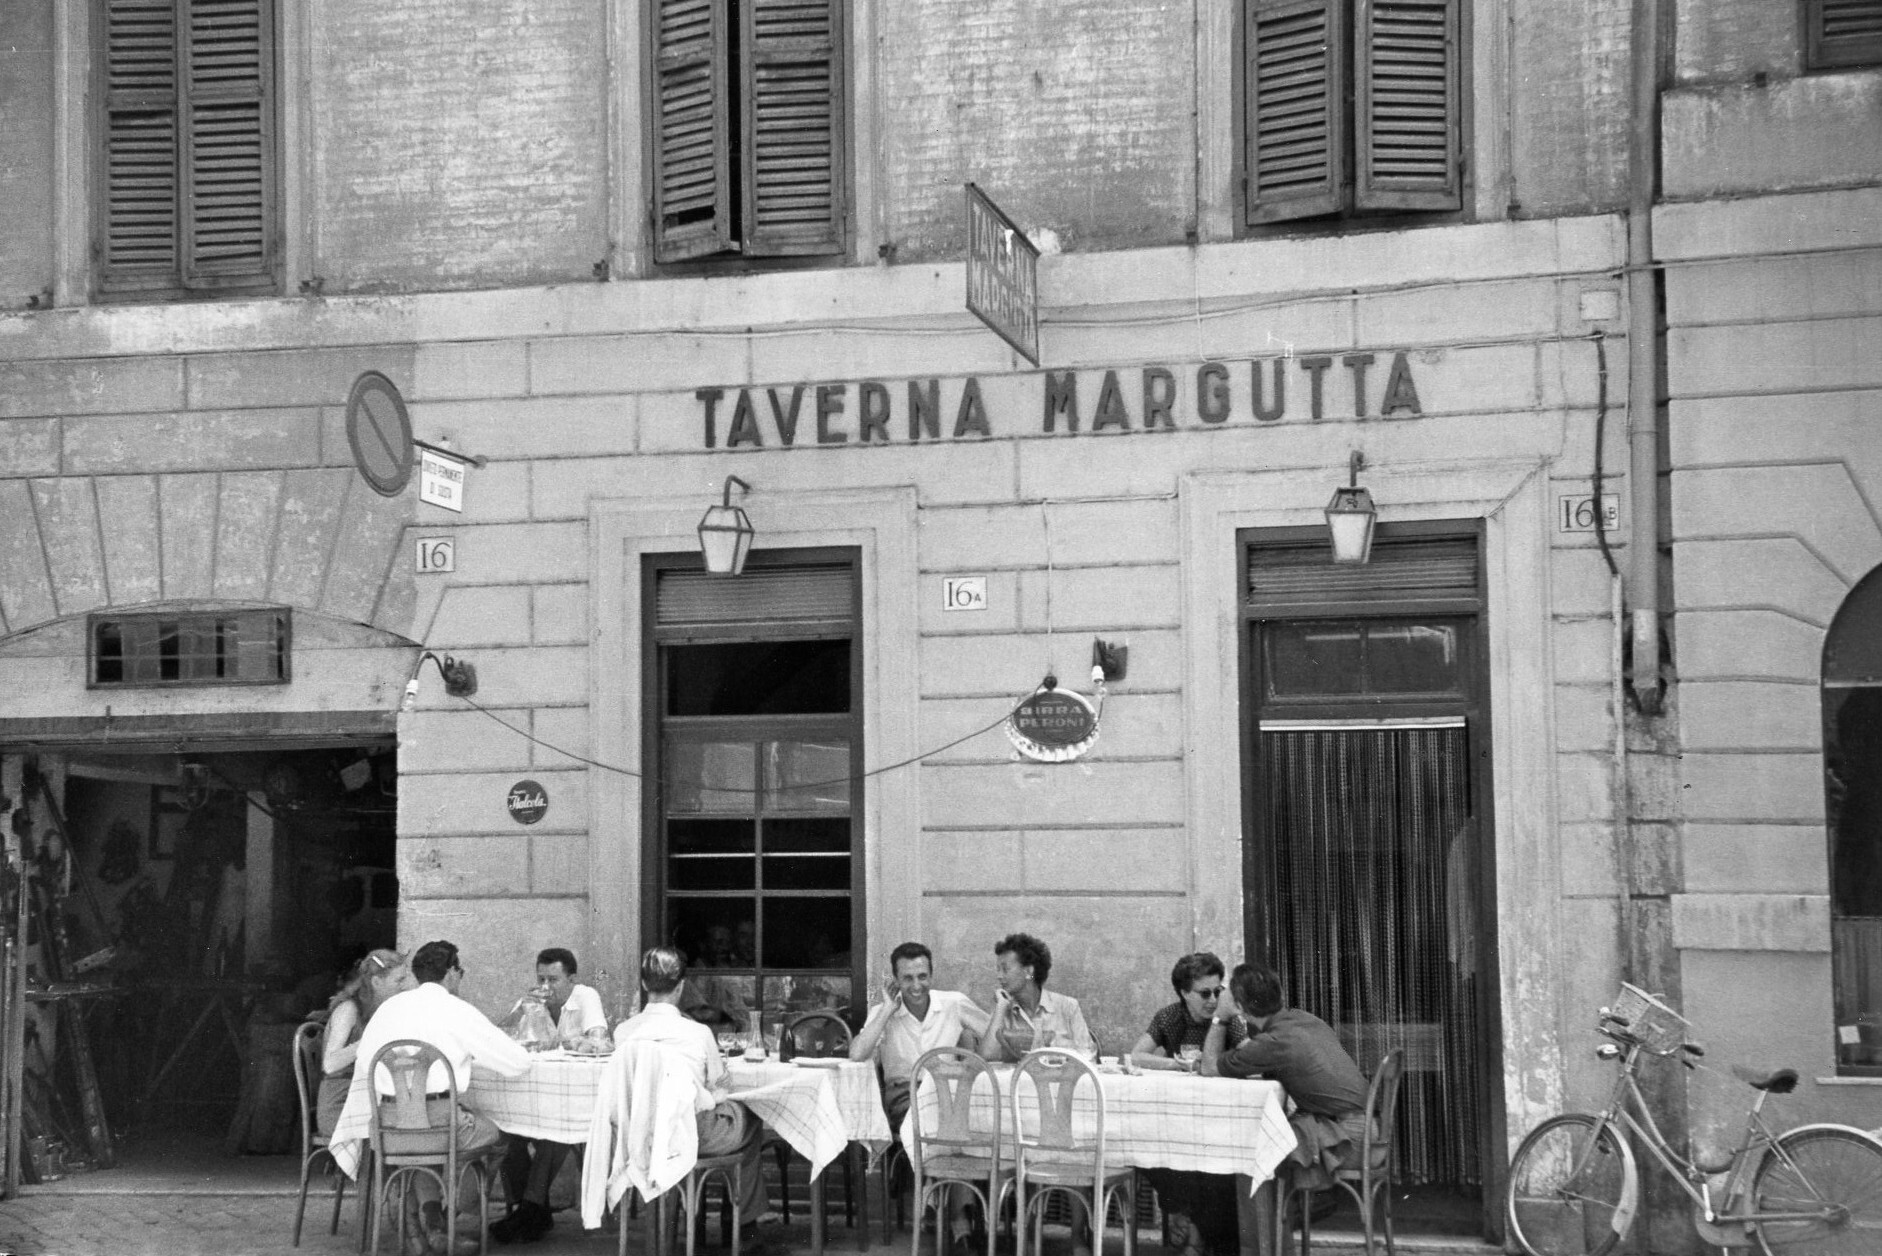 Таверна Маргутта, Рим, Италия, 1951 год. Фотограф Рут Оркин